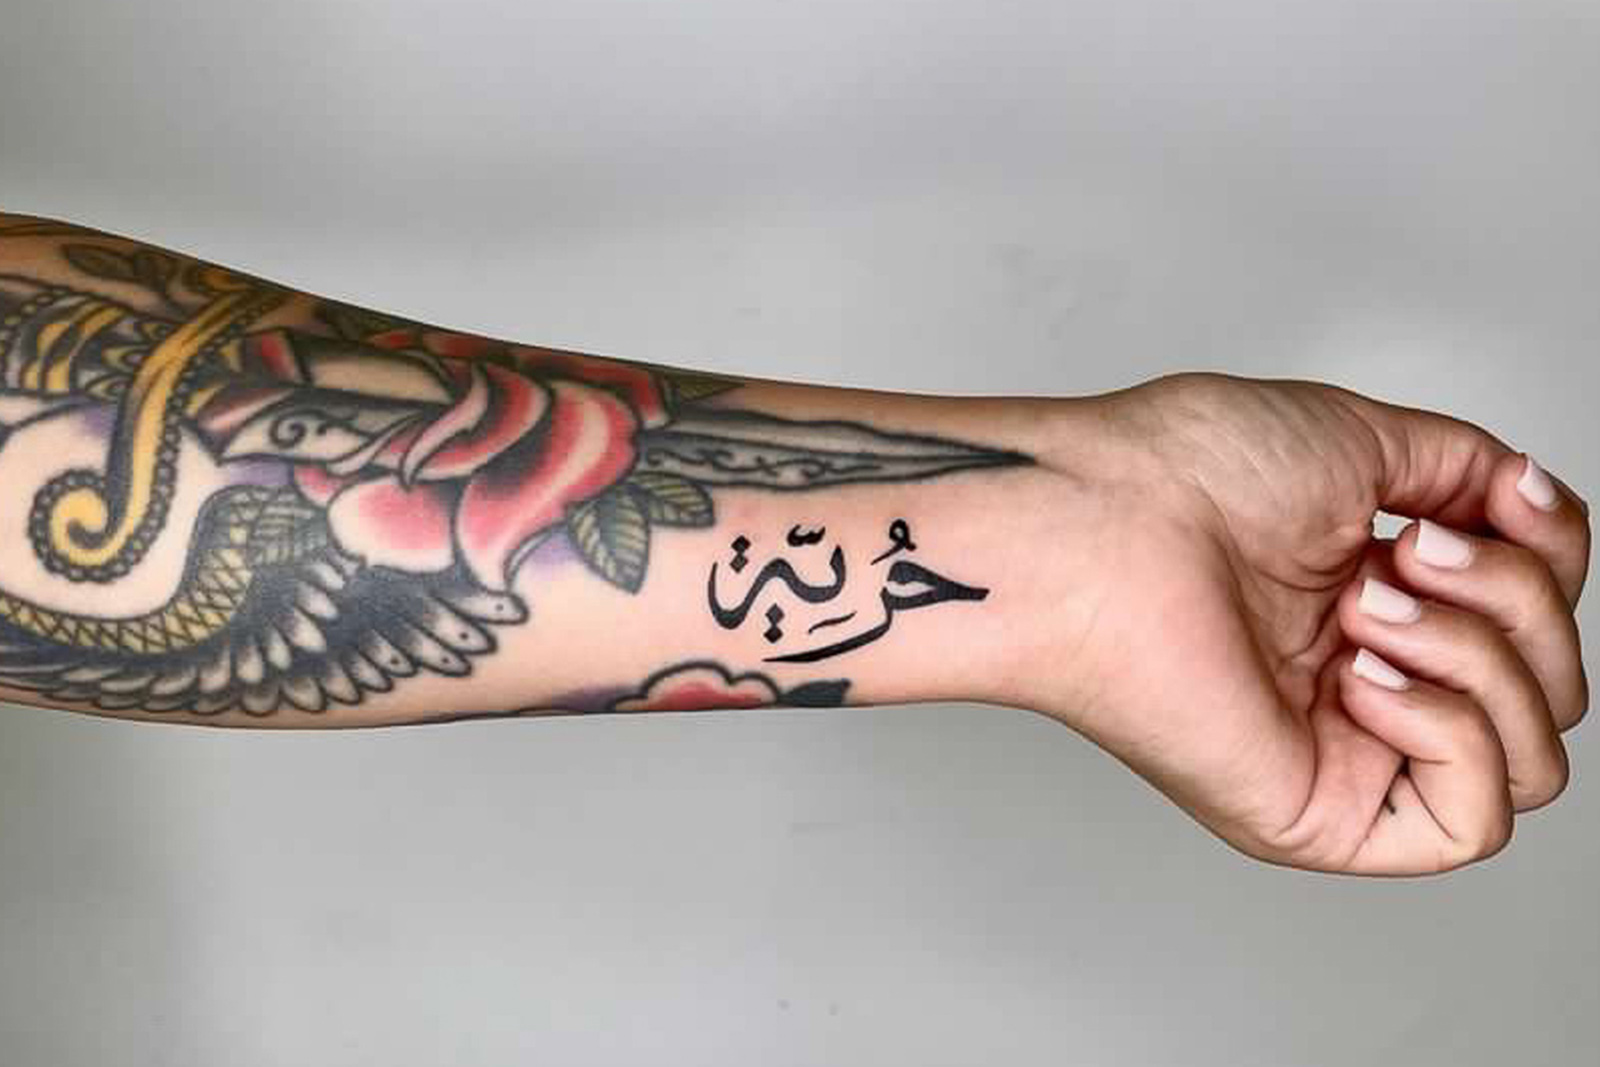 Large Semi-permanent Tattoo Back Tattoo Long Text Tattoo 2 Week Tattoo  Jagua Henna Sexy Gift Idea Spine Tattoo - Etsy Norway